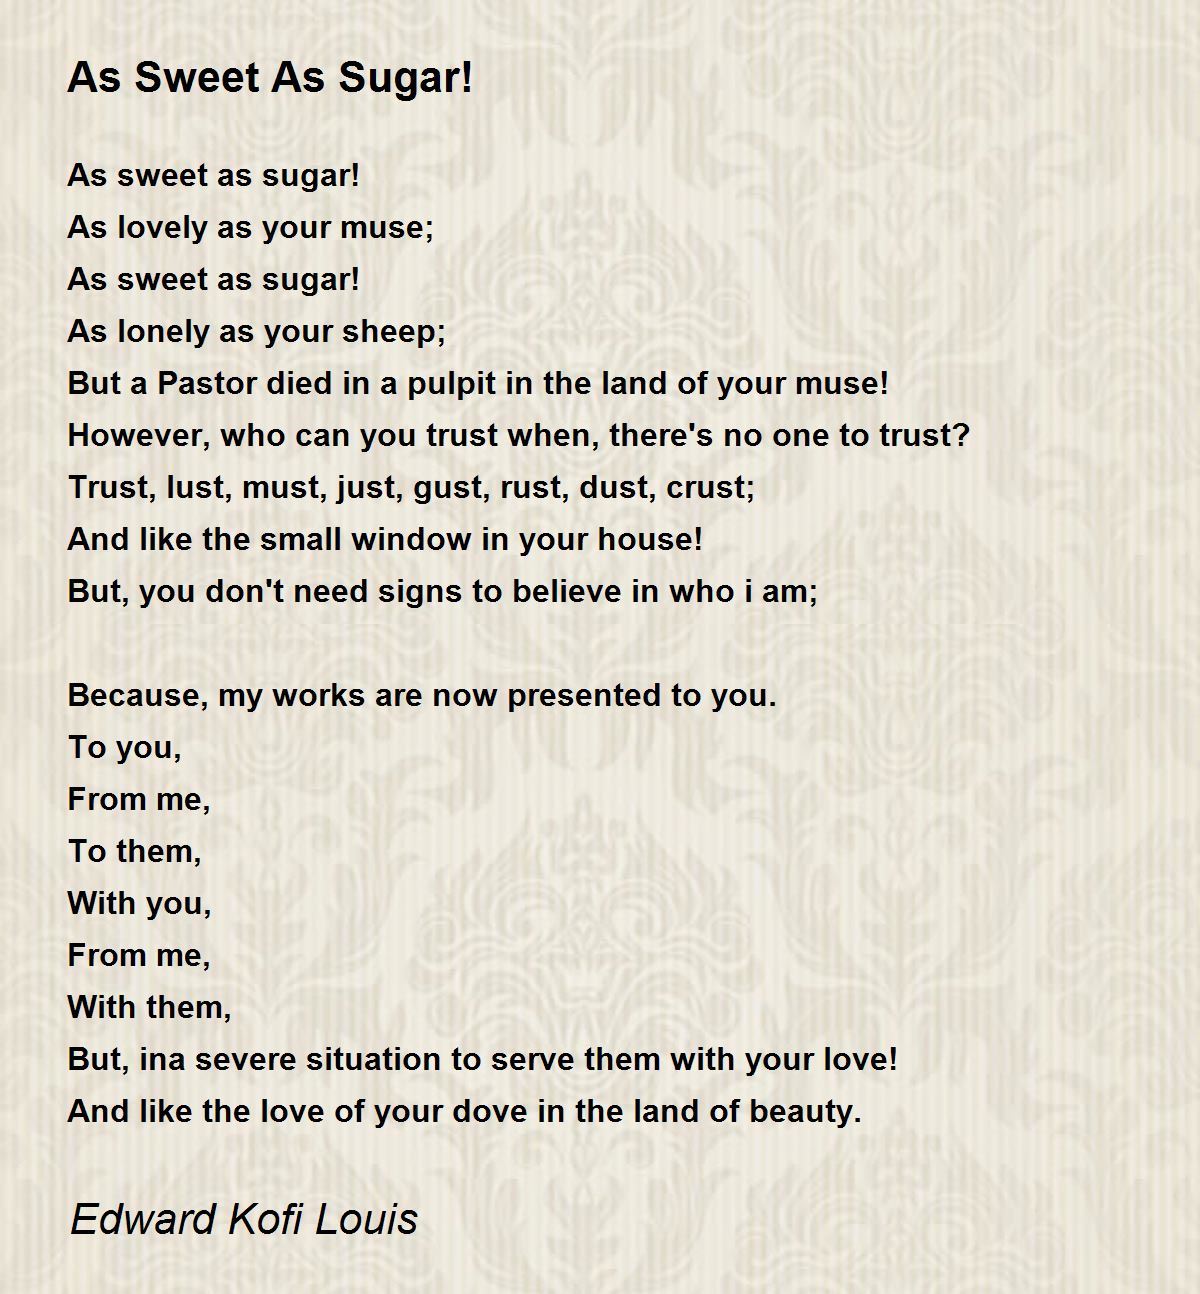 As sugar sweet Sweet as